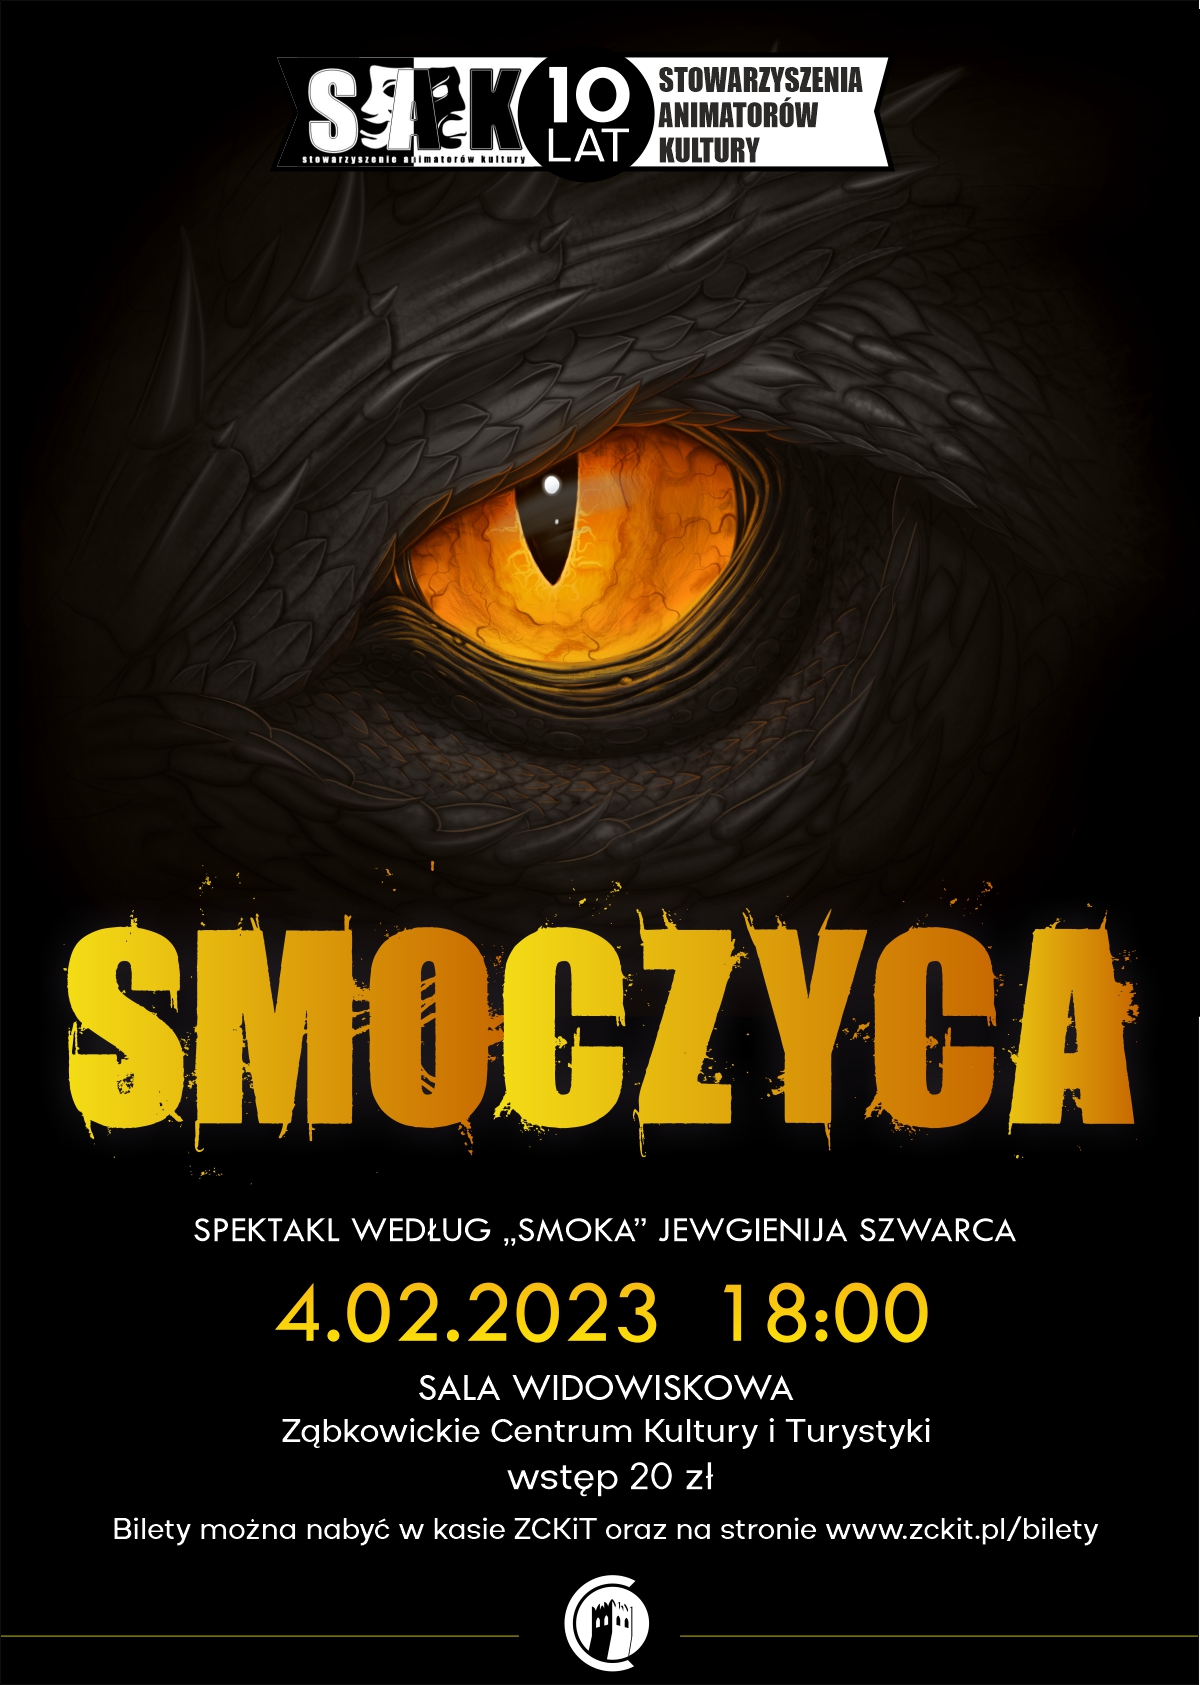 Plakat o spektaklu "Smoczyca" 4 lutego 2023 o godzinie 18:00 w sali widowiskowej ZCKiT.